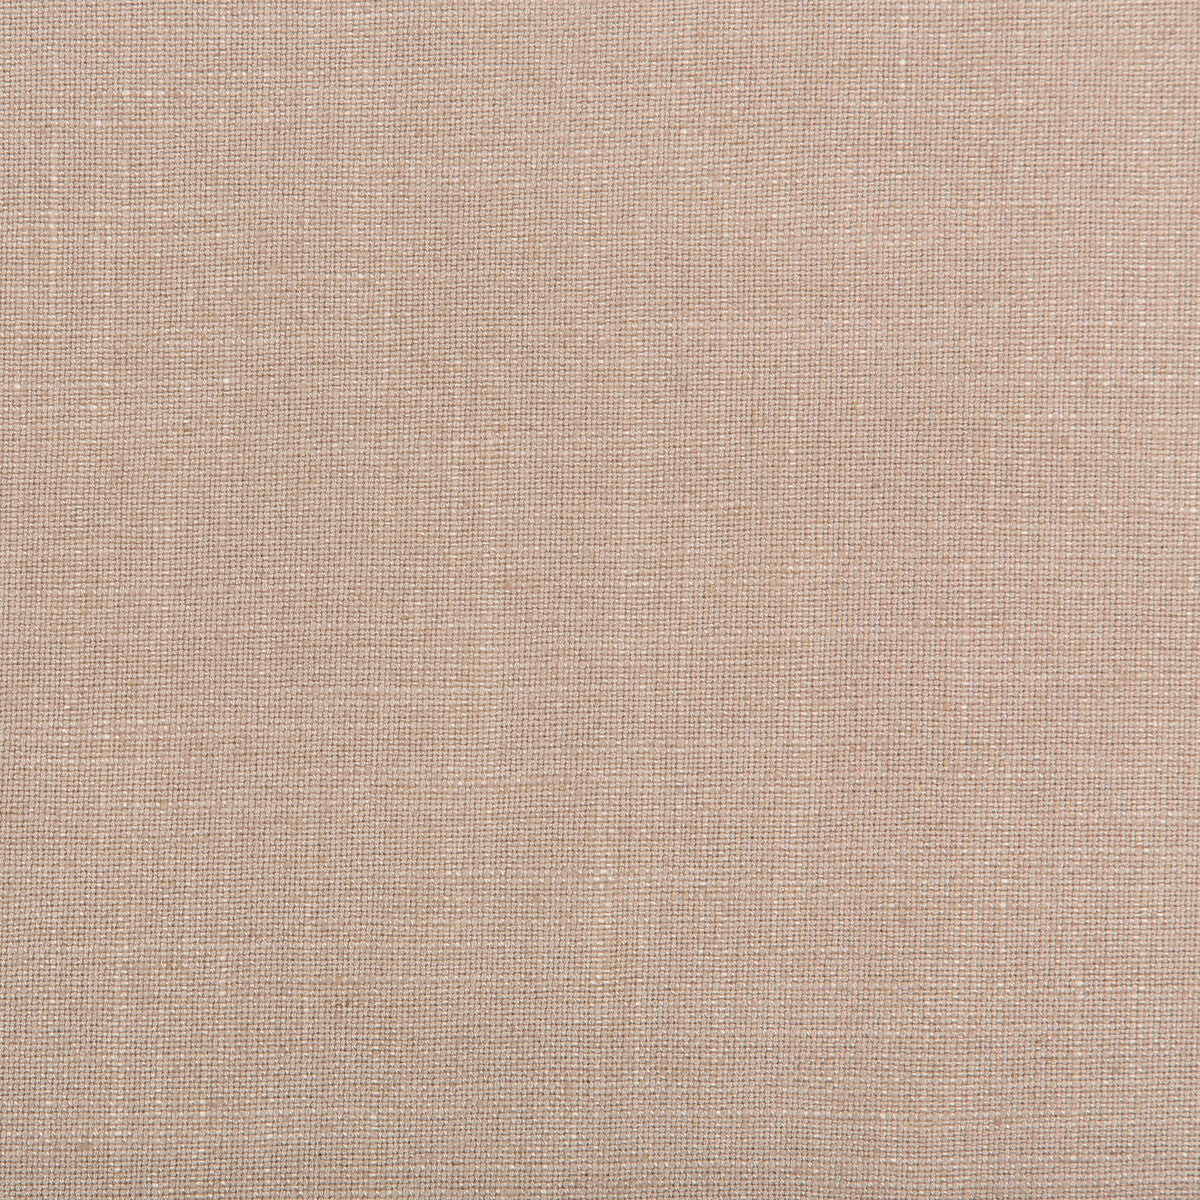 Aura fabric in lavender color - pattern 35520.710.0 - by Kravet Design